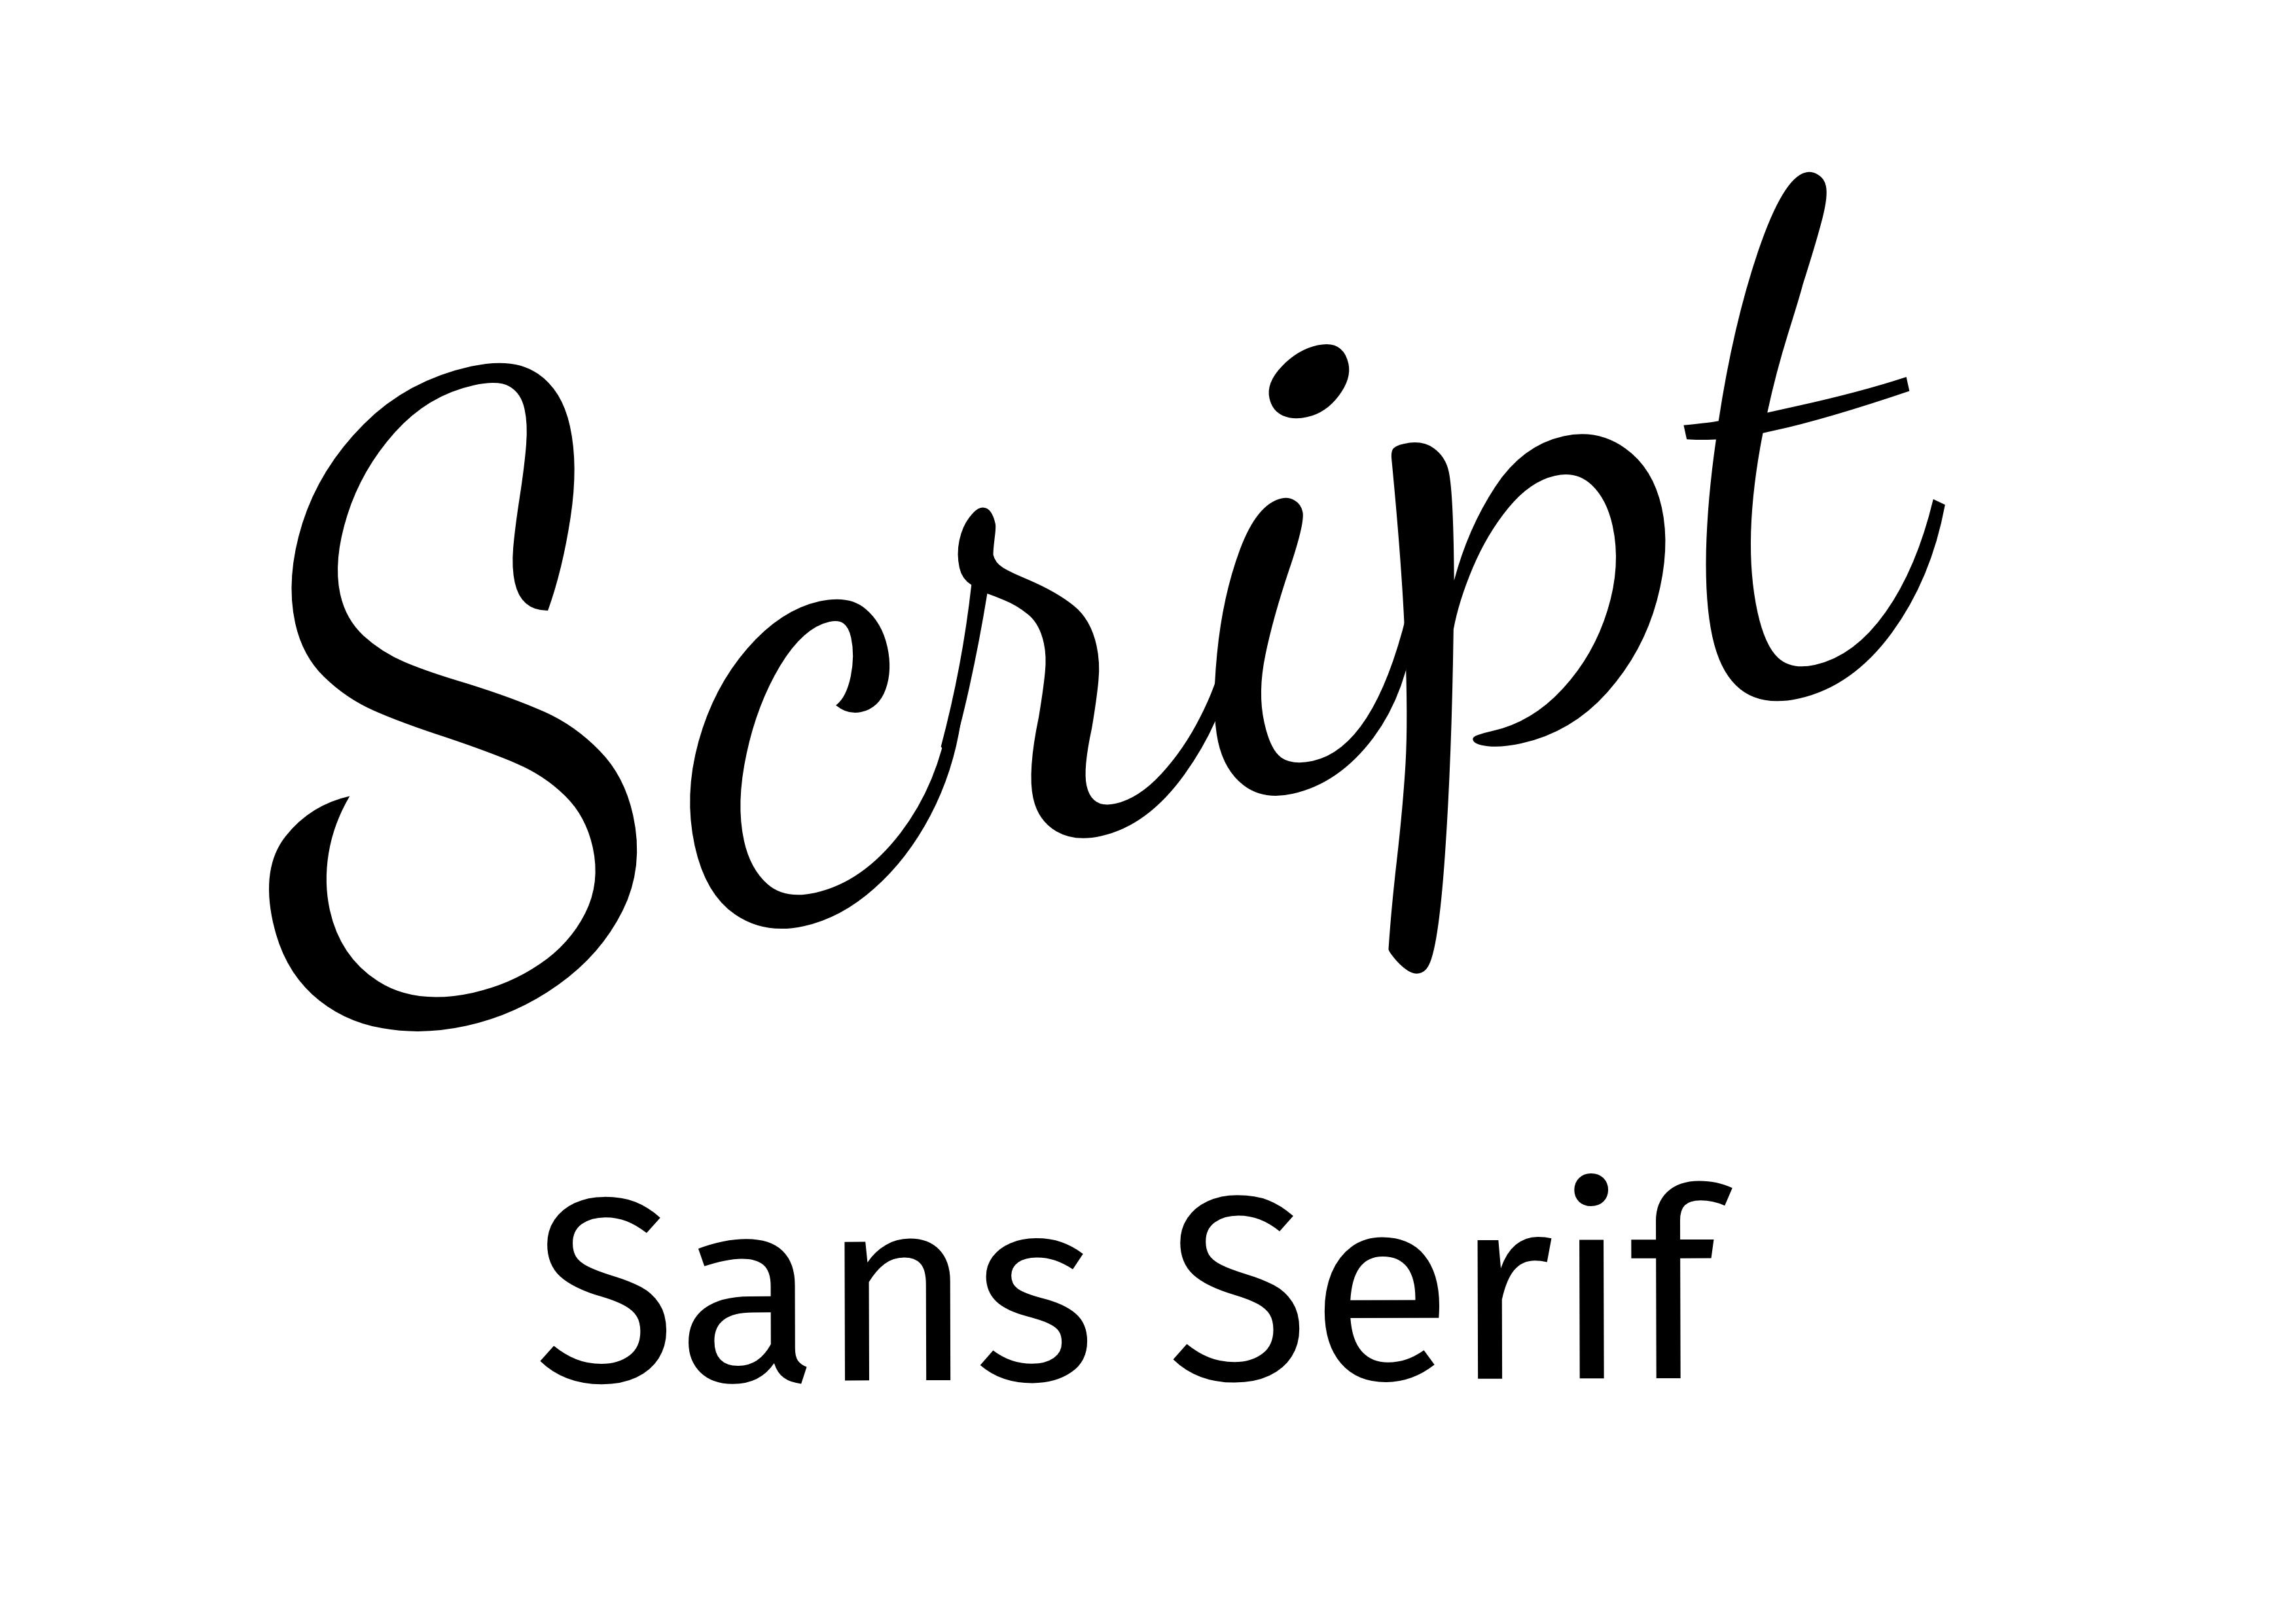 Emparelhamento de Fontes - 'Script' rotacionada em preto e 'Sans Serif' em preto abaixo - O guia completo sobre fontes: 5 tipos essenciais de fontes em tipografia - Imagem